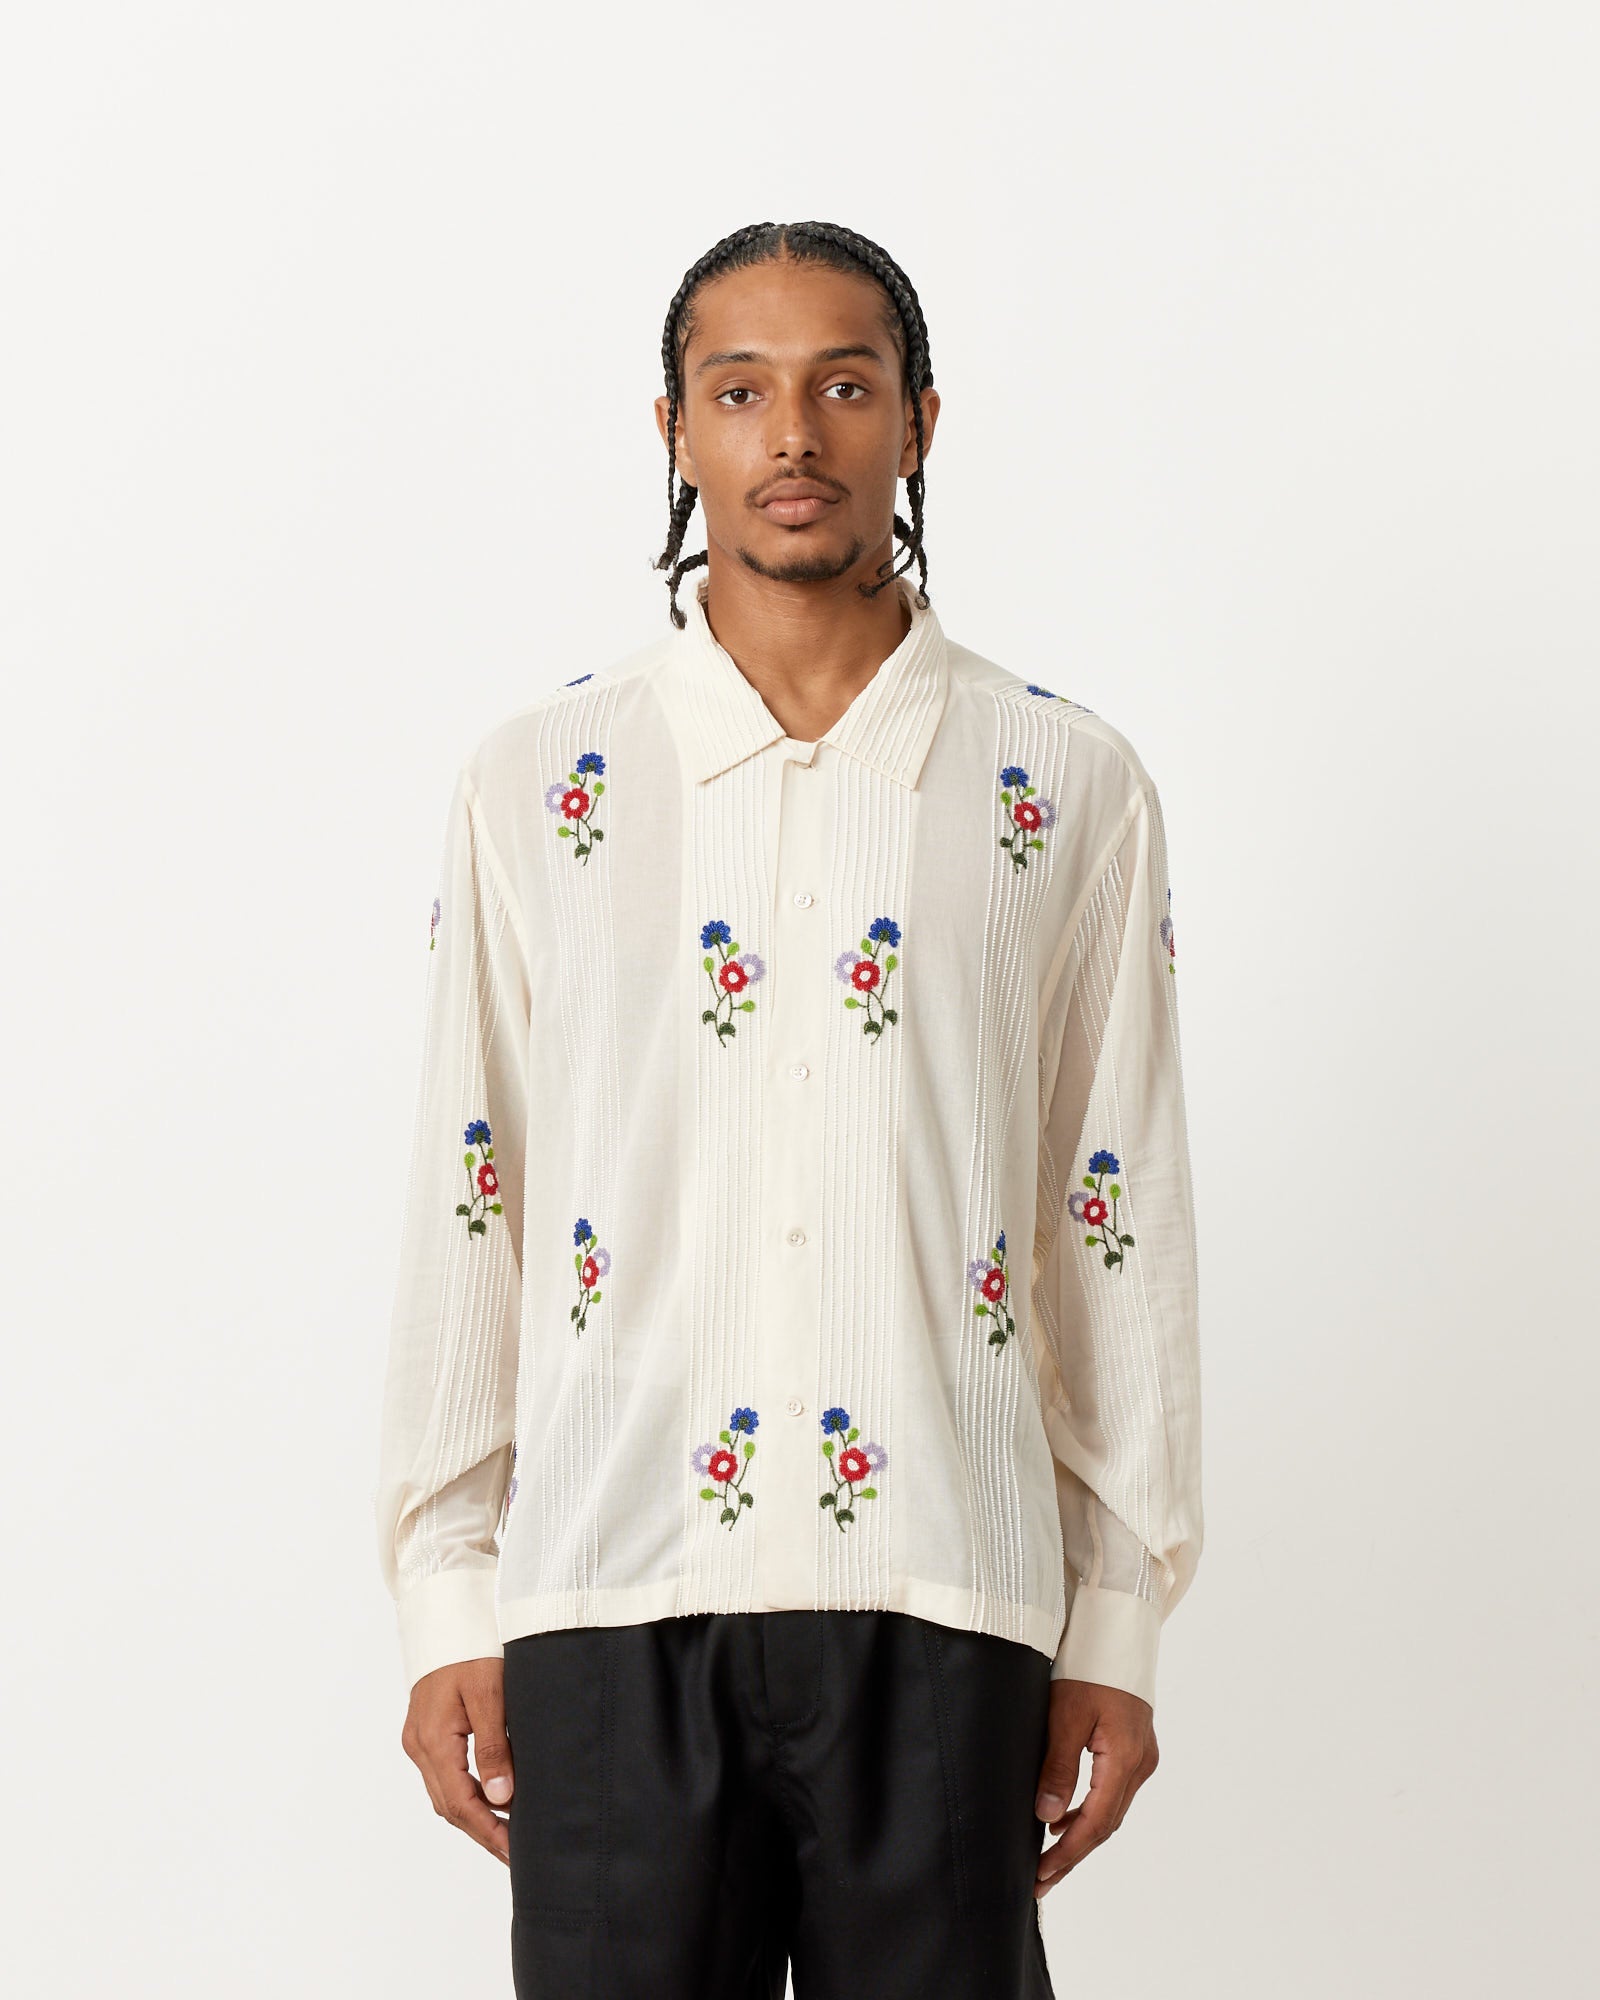 Beaded Wildflower Shirt in White Multi